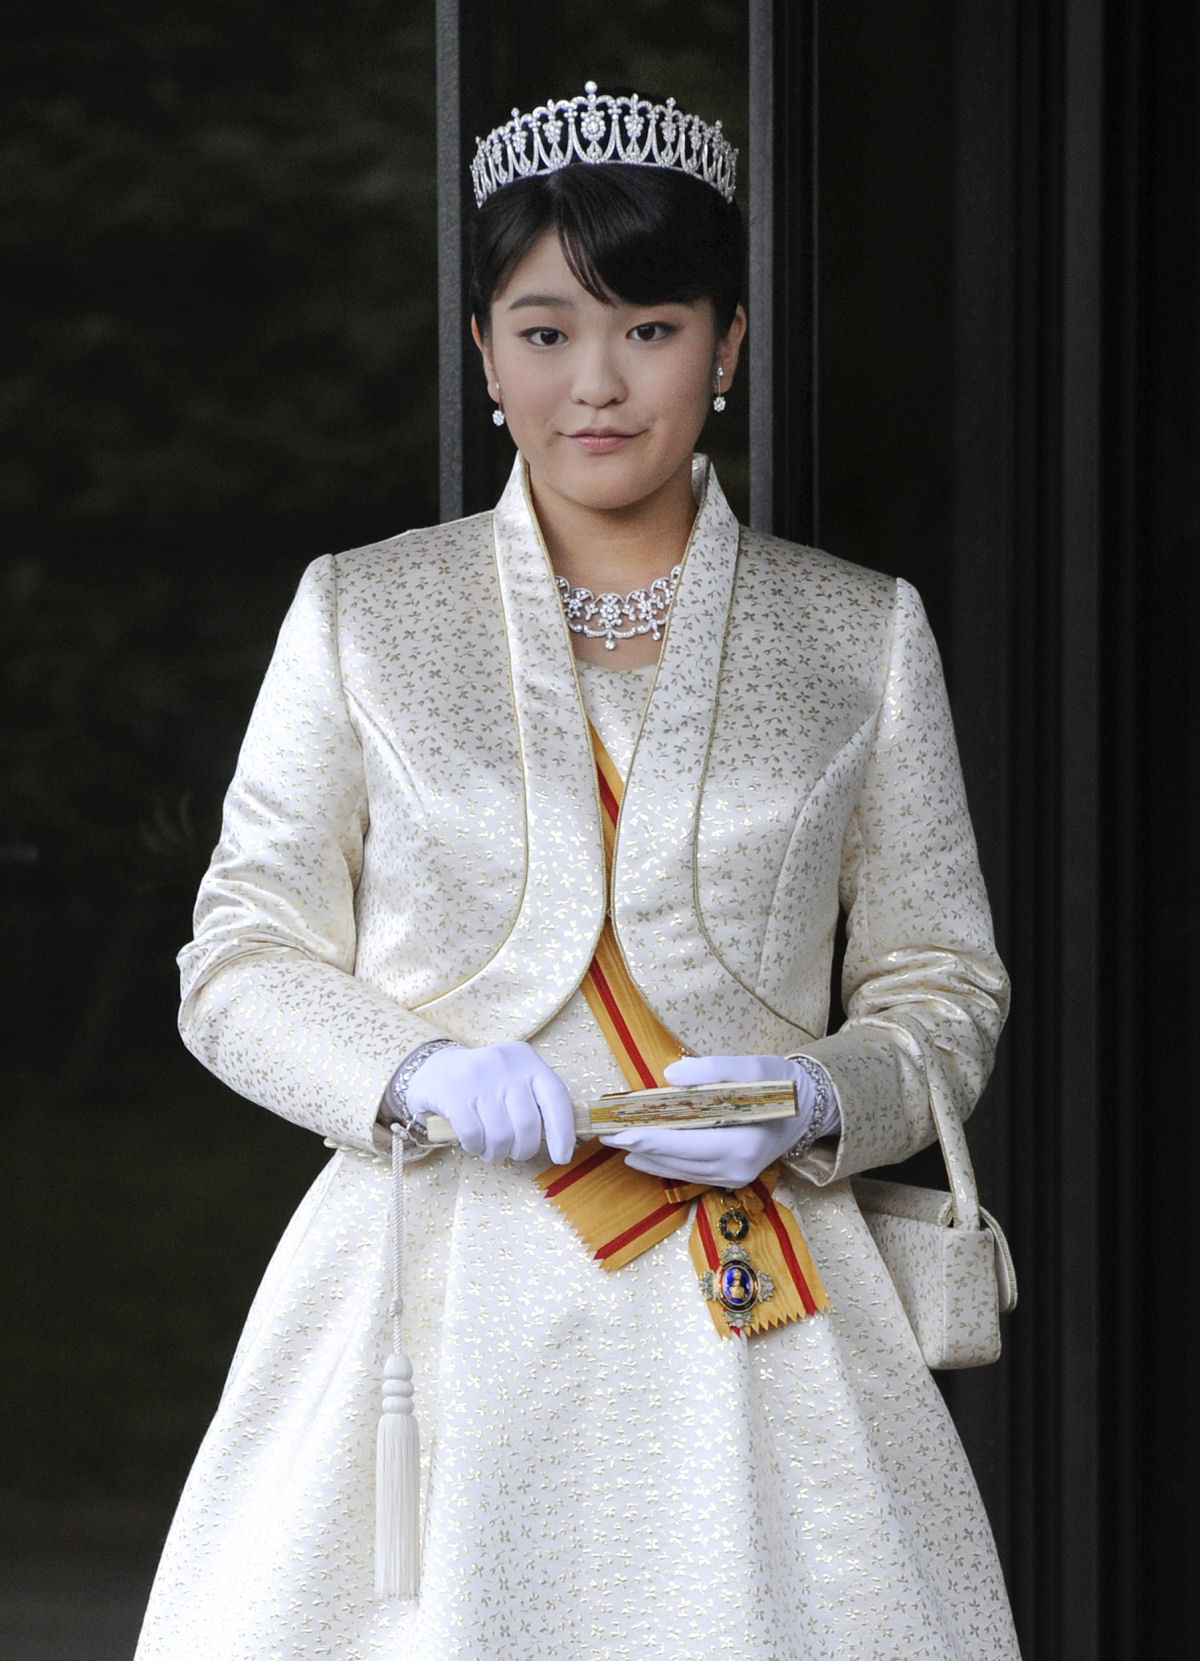 A Princesa Mako do Japo vai deixar seu status real para se casar com um plebeu 09